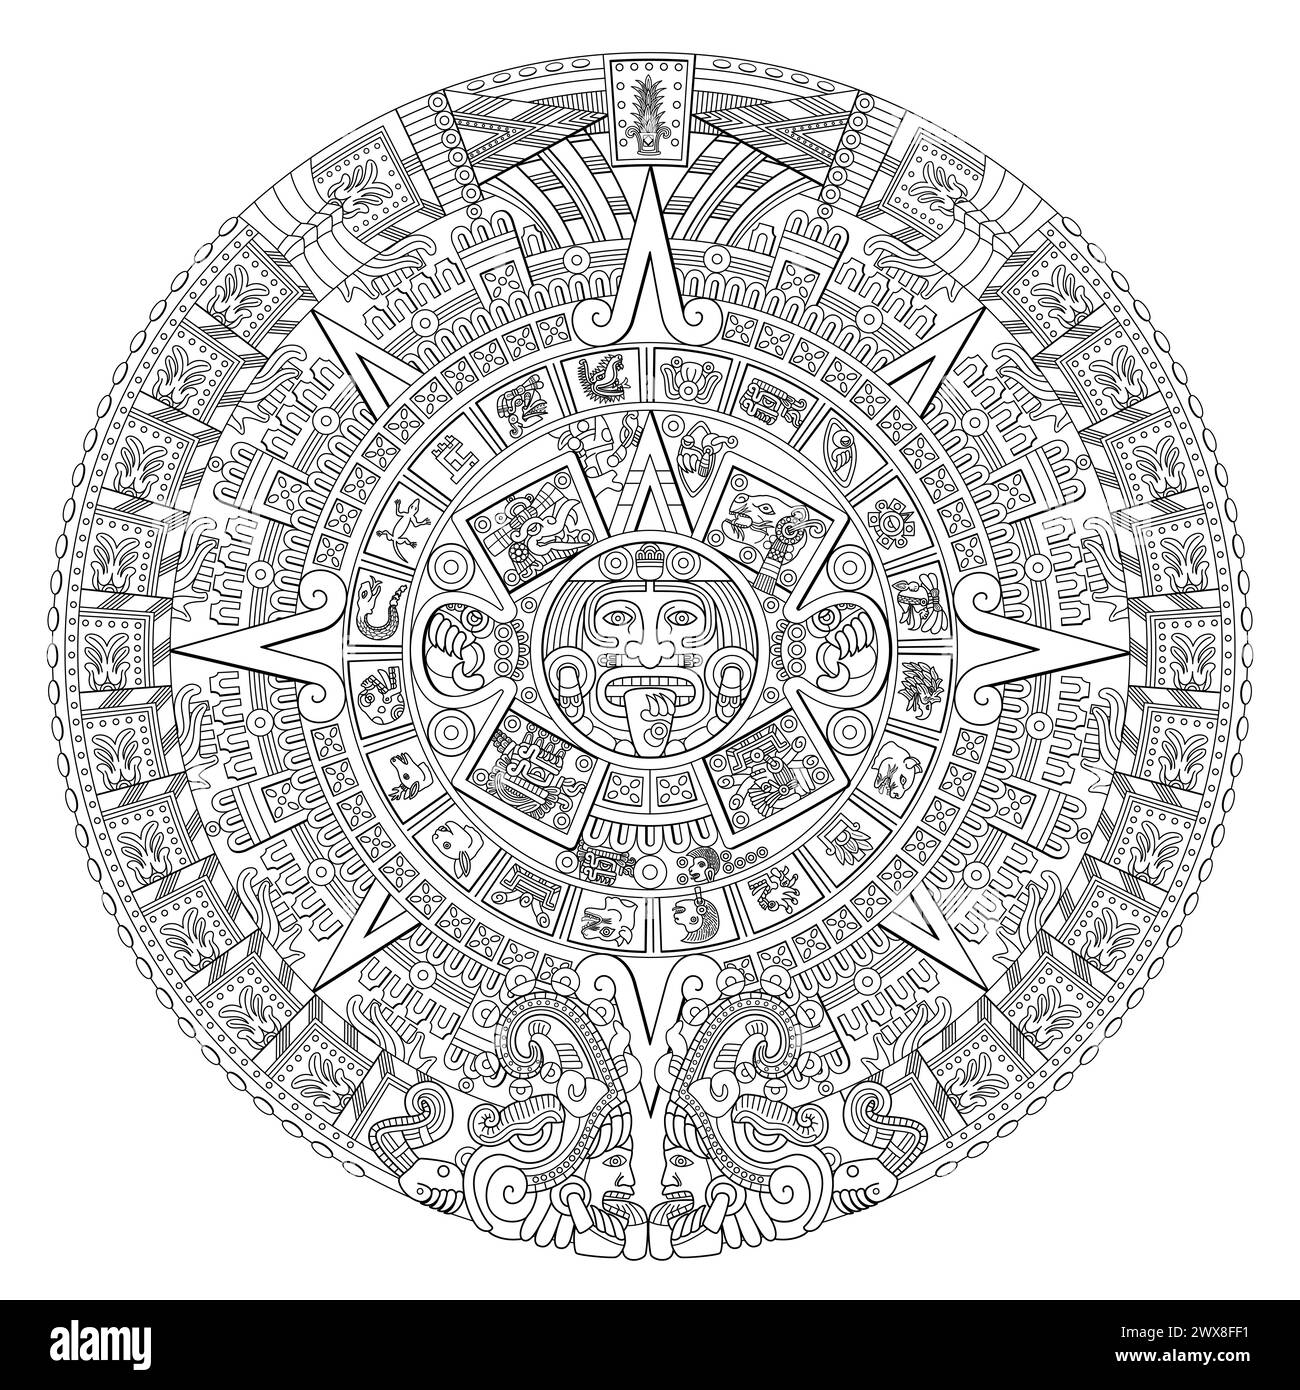 Aztèque Sun Stone. Au centre du disque apparaît le glyphe appelé mouvement avec le visage de la divinité solaire Tonatiuh, entouré par les signes de 20 jours. Banque D'Images